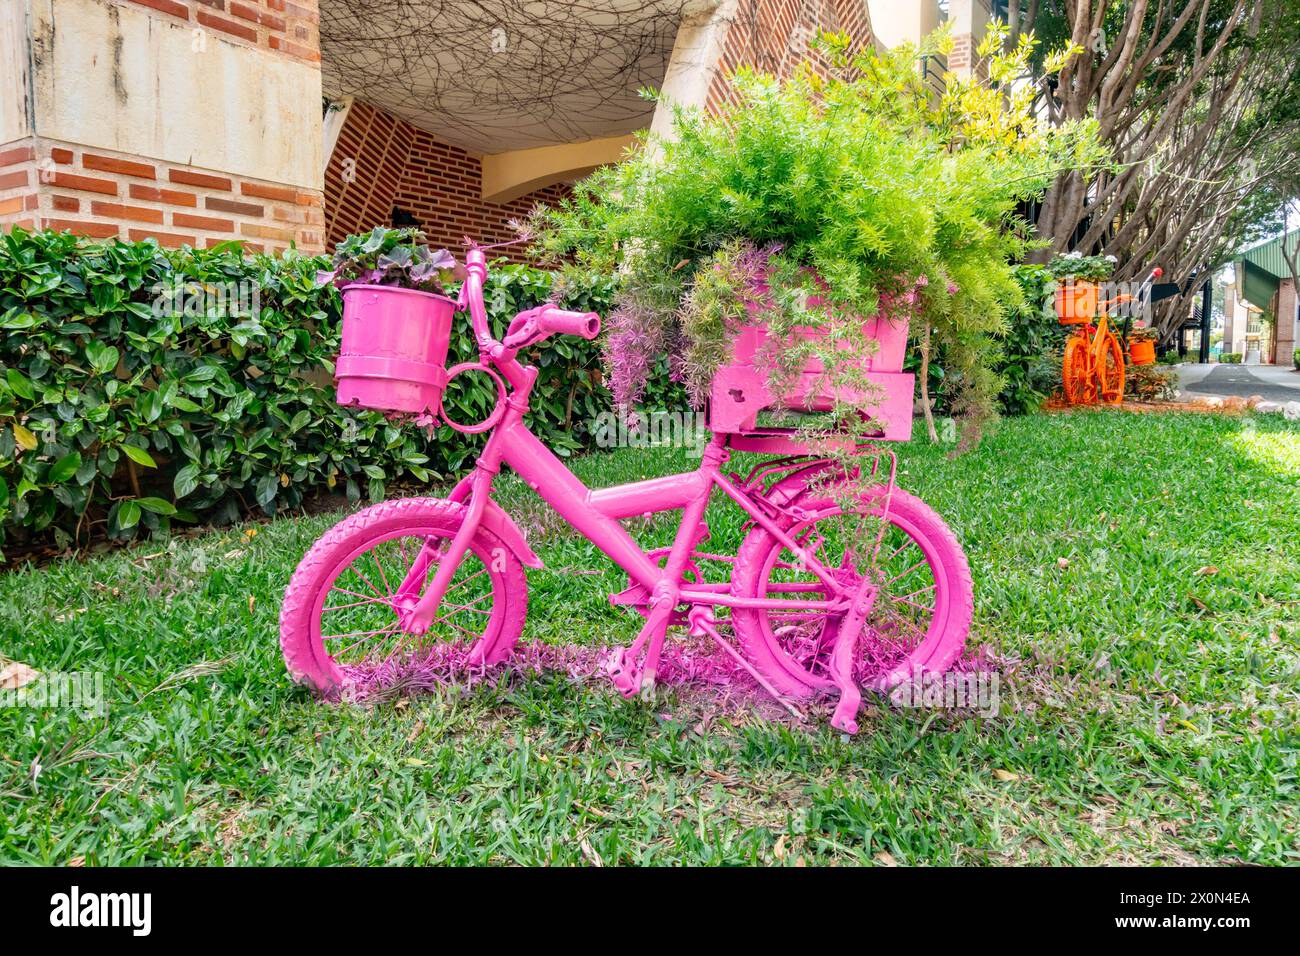 Ein altes Fahrrad, das mit Sprühfarbe umfunktioniert wurde, um es in einen dekorativen, farbenfrohen Gartentopf zu verwandeln Stockfoto